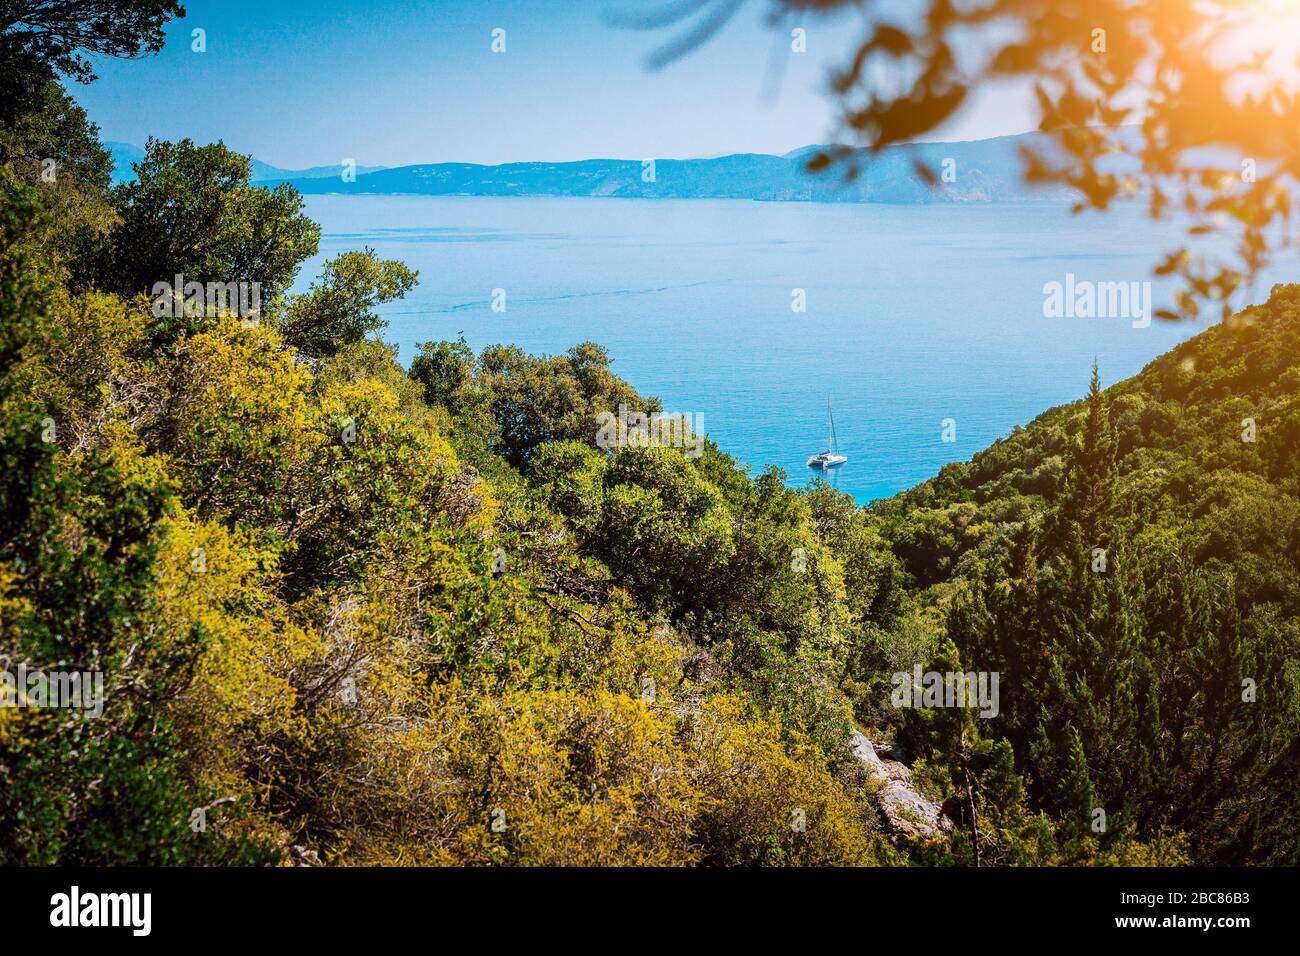 Vista panoramica ultra ampia dell'idilliaca cittadina a valle con tetti rossi sull'isola mediterranea. Oliveti, cipressi e baia blu in lontananza. Foto Stock